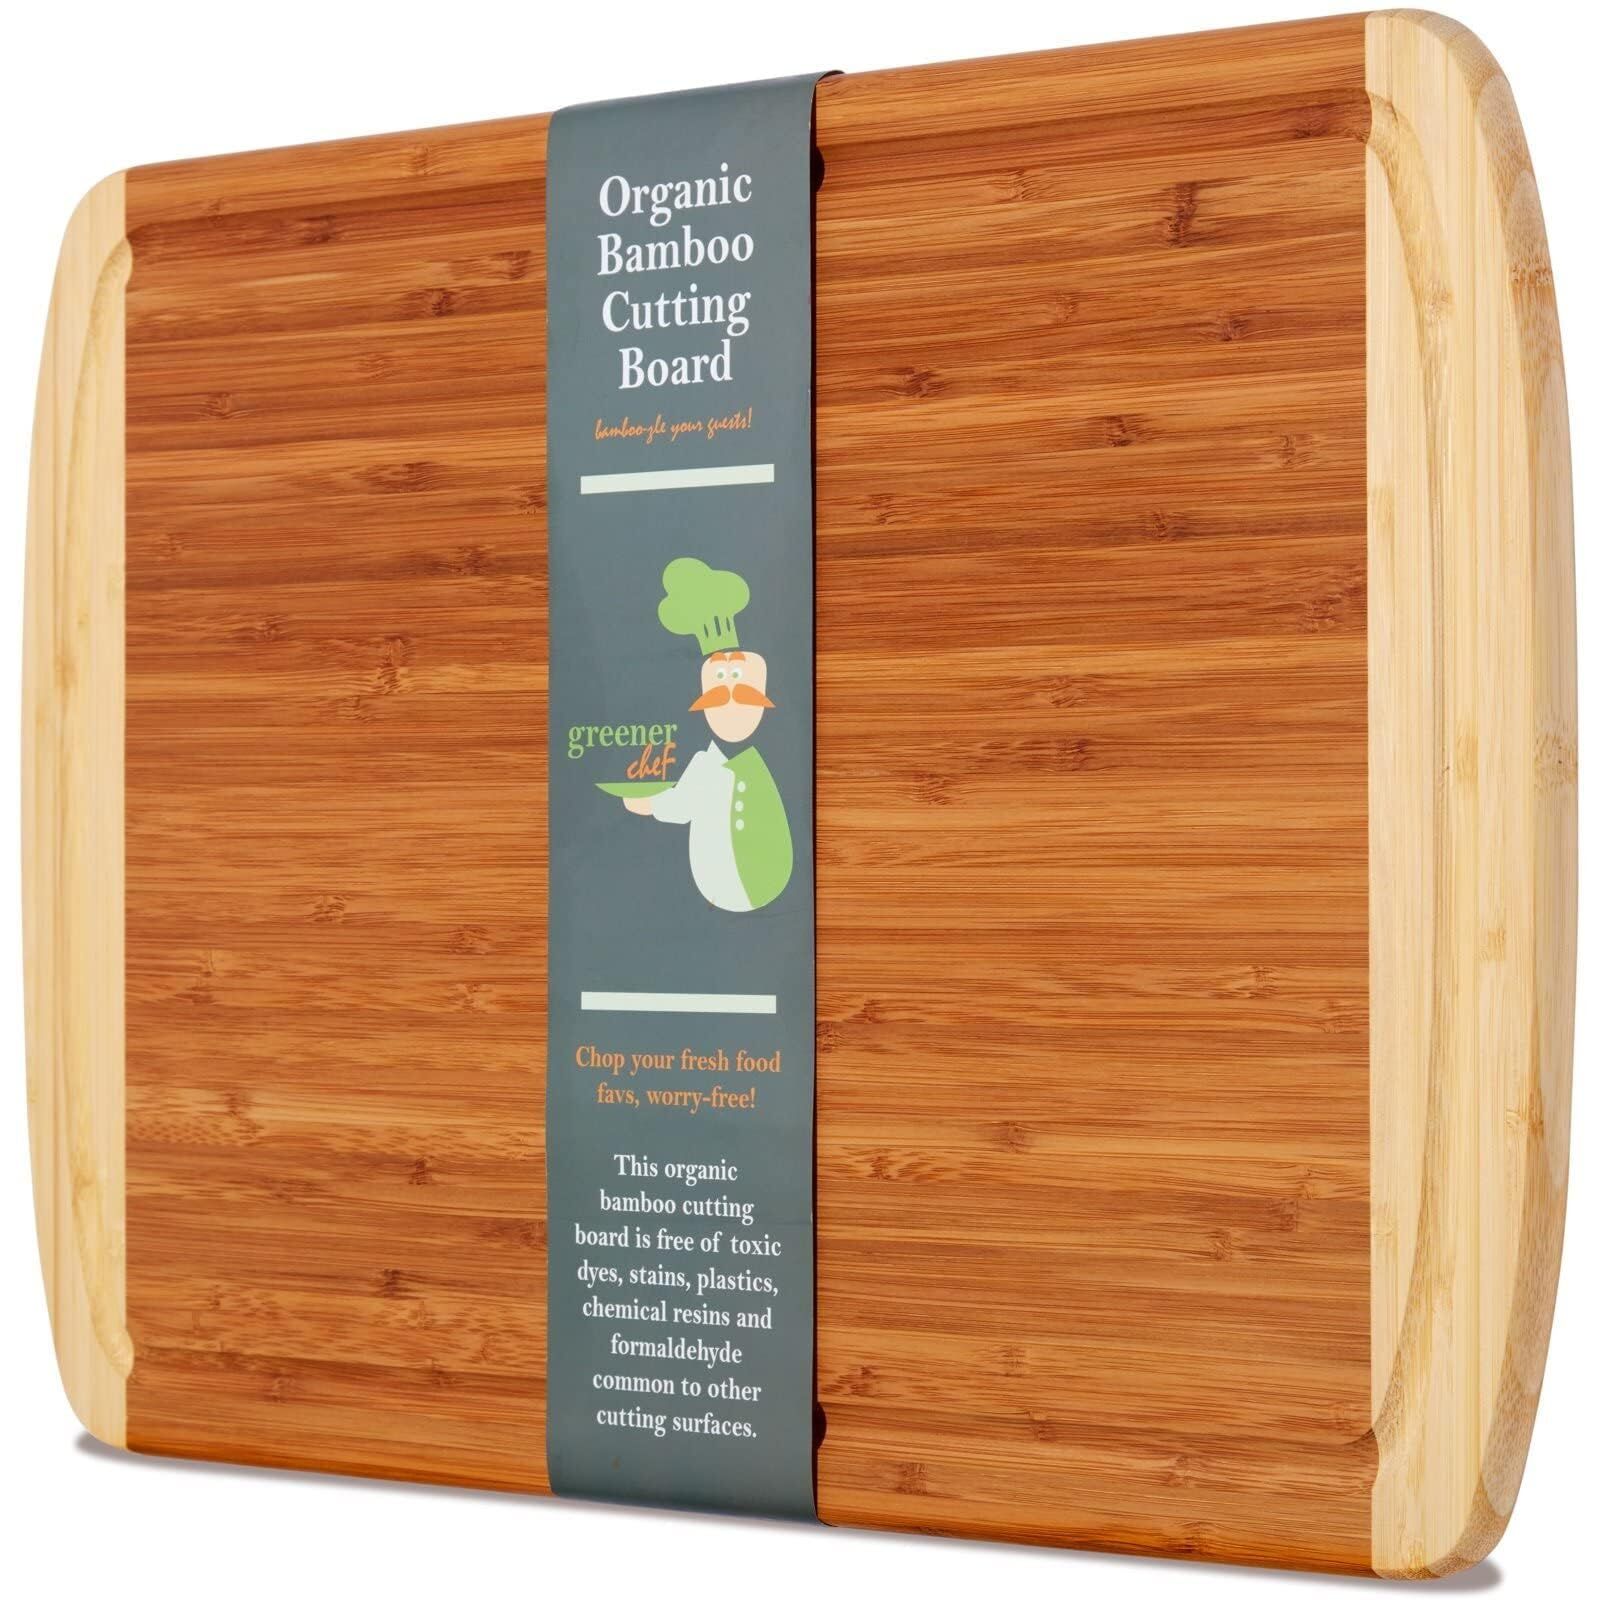 Greener Chef Small Bamboo Cutting Board -12 x 9 inch Wood Cutting Board, Brown